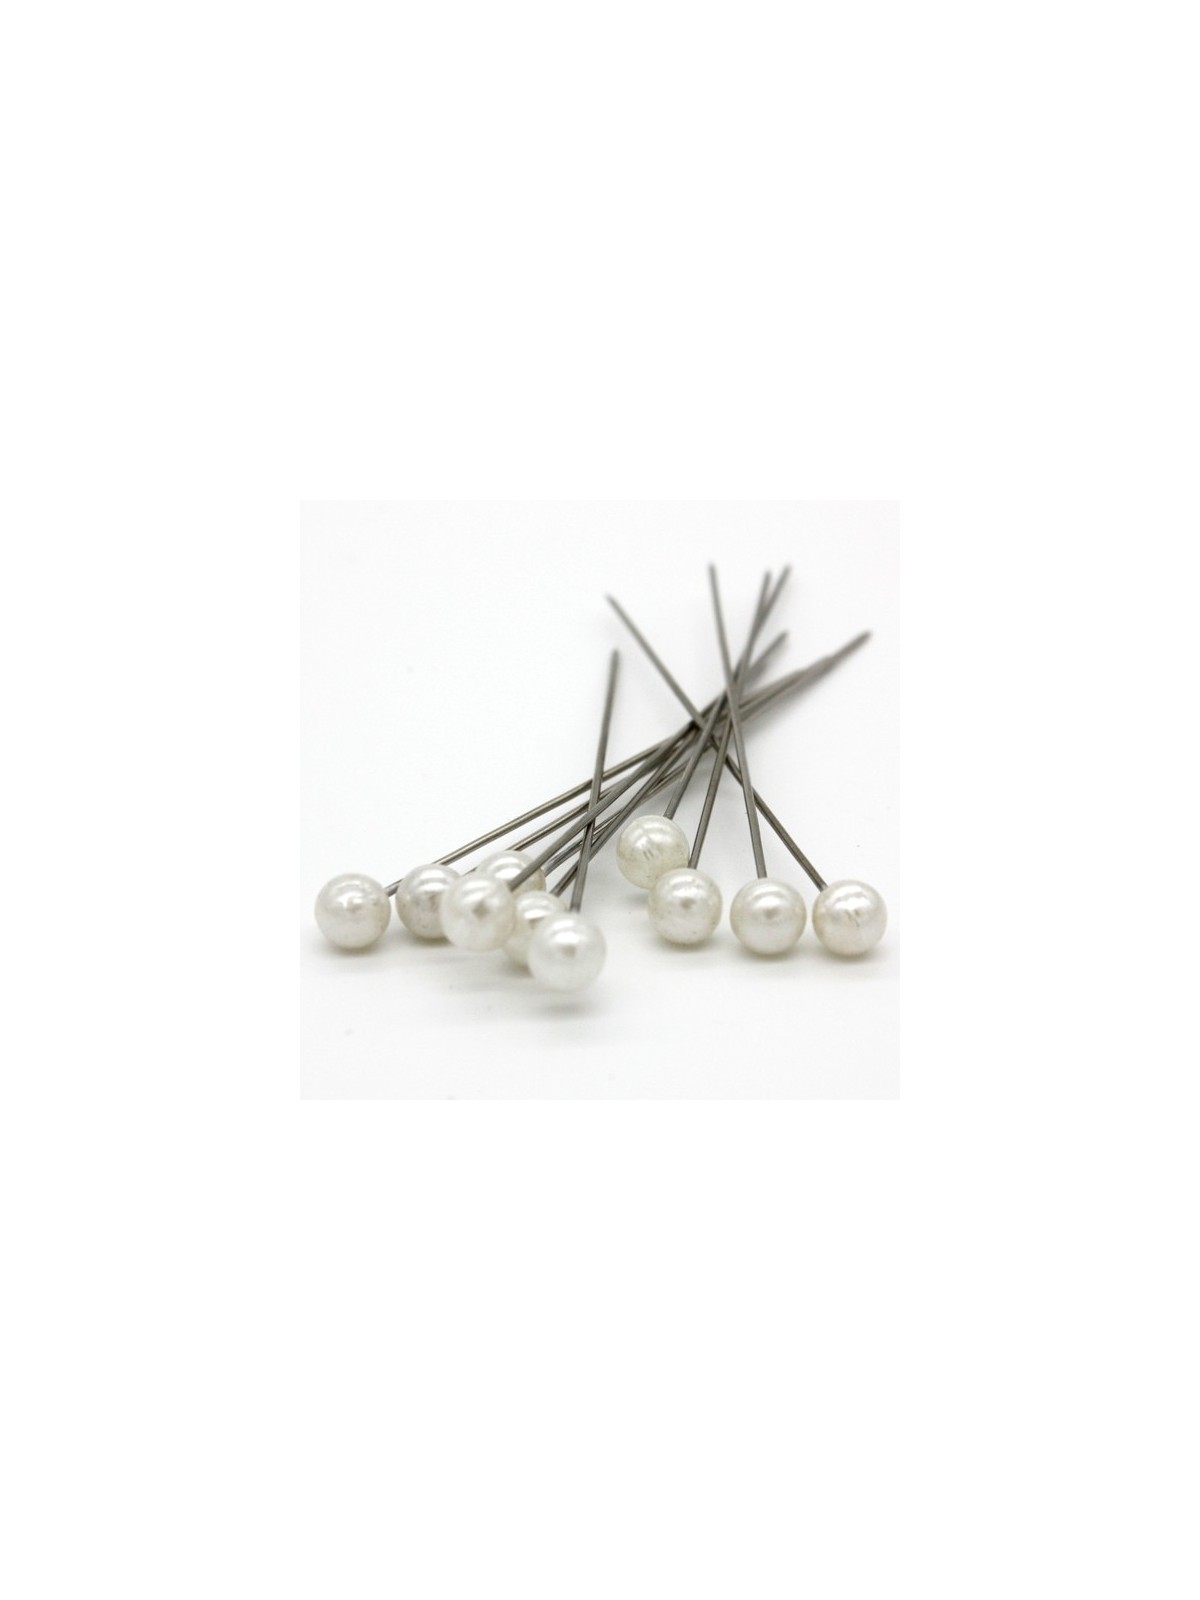 Dekorační špendlík - bílá perla - 65mm/10ks